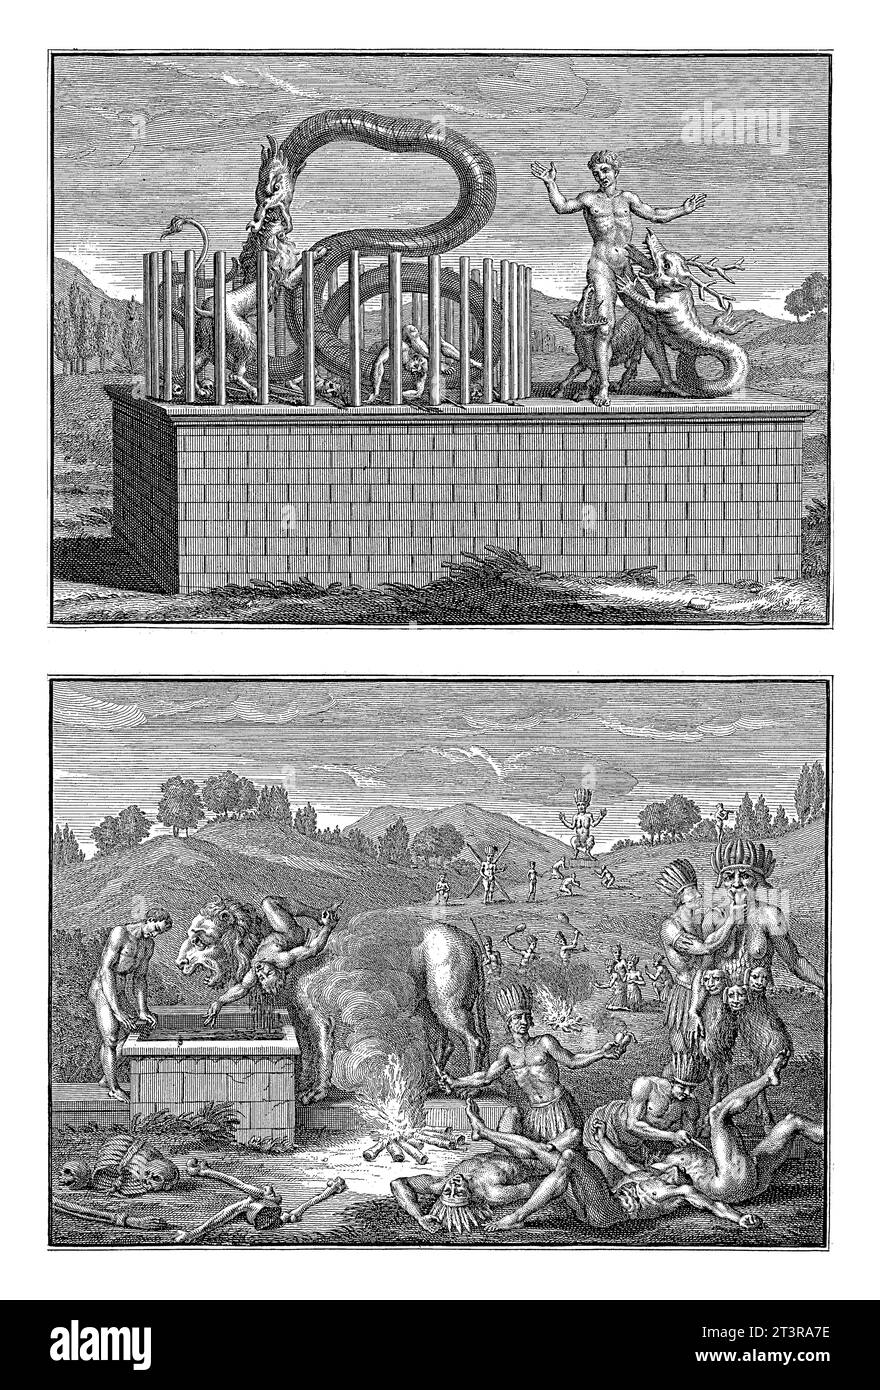 Darstellungen von Ritualen von Indianern aus Nicaragua, Bernard Picart (Werkstatt von), 1723 Magazin mit zwei Darstellungen von religiösen Ritualen von Ind Stockfoto